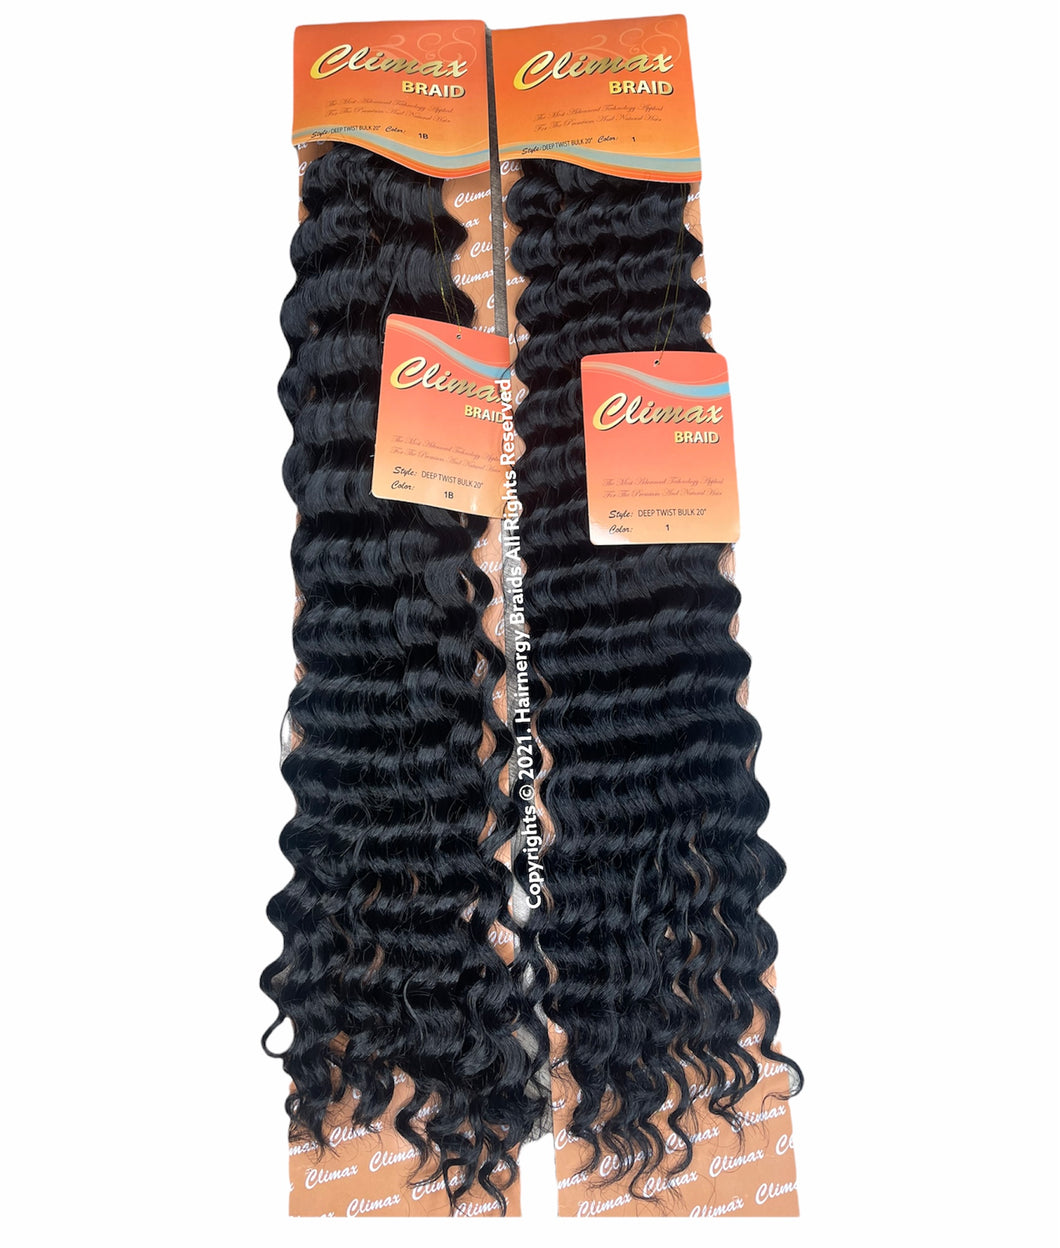 CLIMAX Deep Twist Bulk Braid 20 inches Crochet Hair